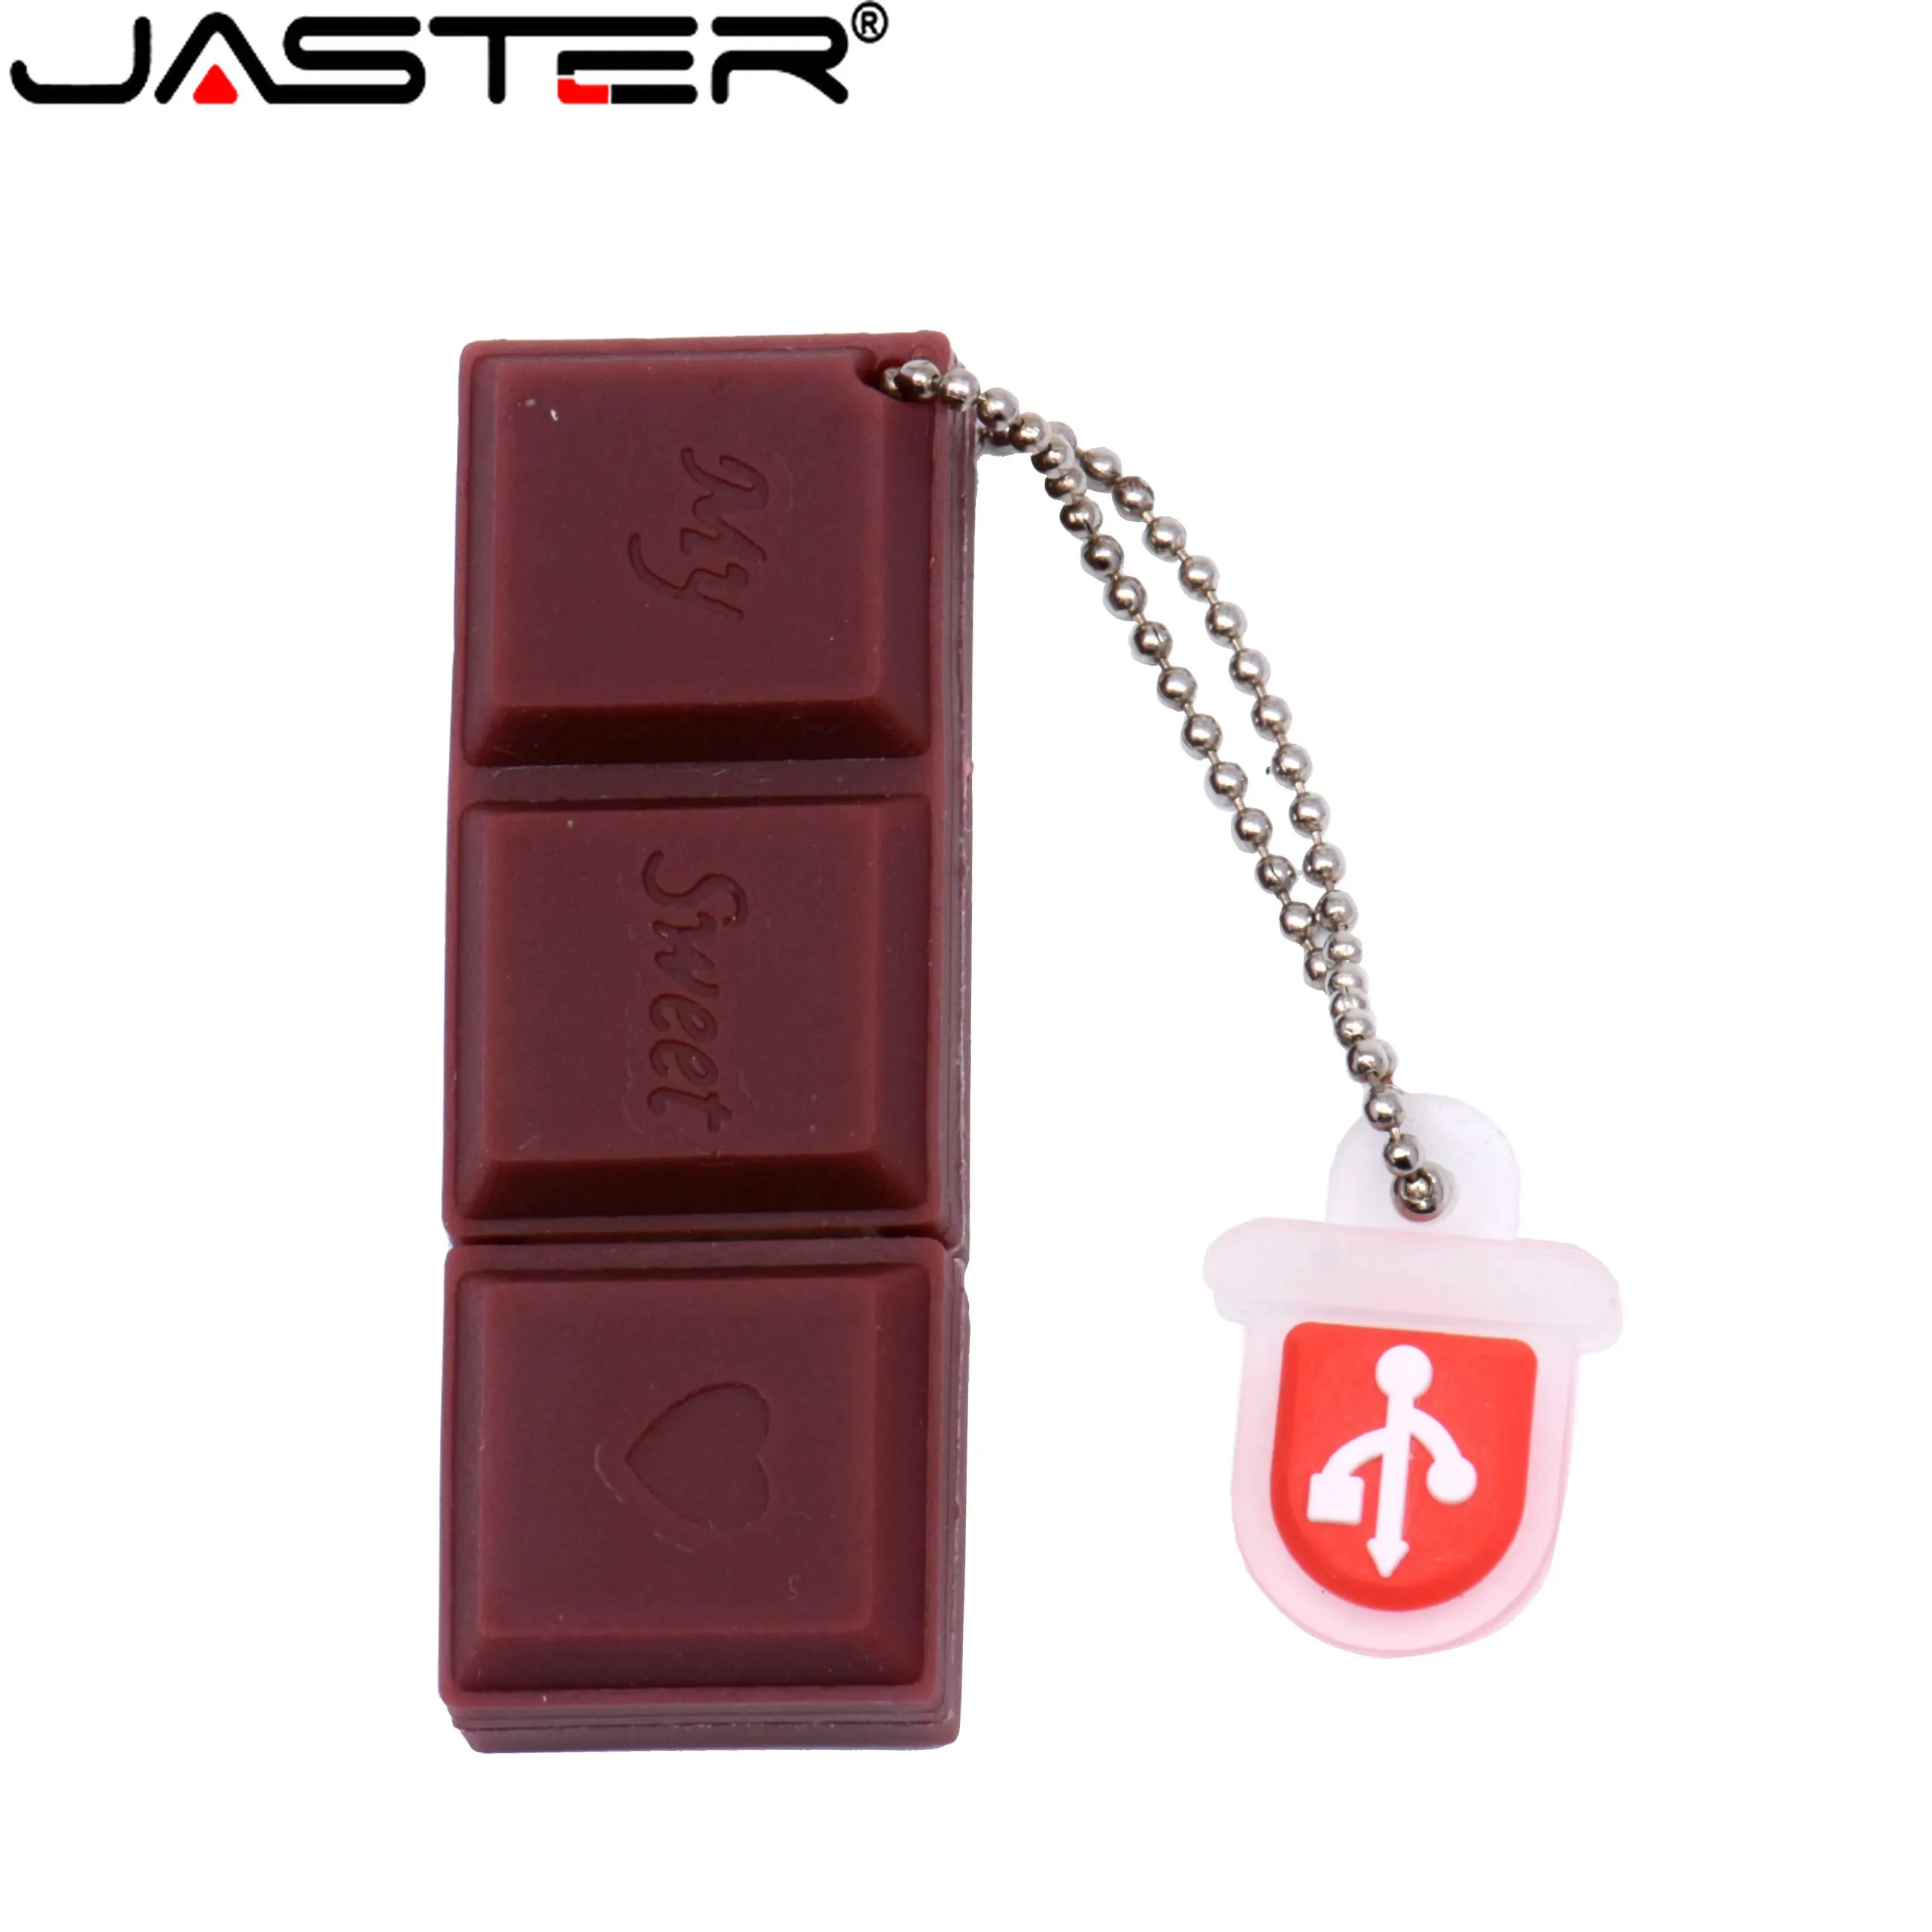 Jaster-果物と野菜のフラッシュドライブ,64GB,32GB,チョコレートクリーム,メモリスティック,人差し上げ,キャンディー